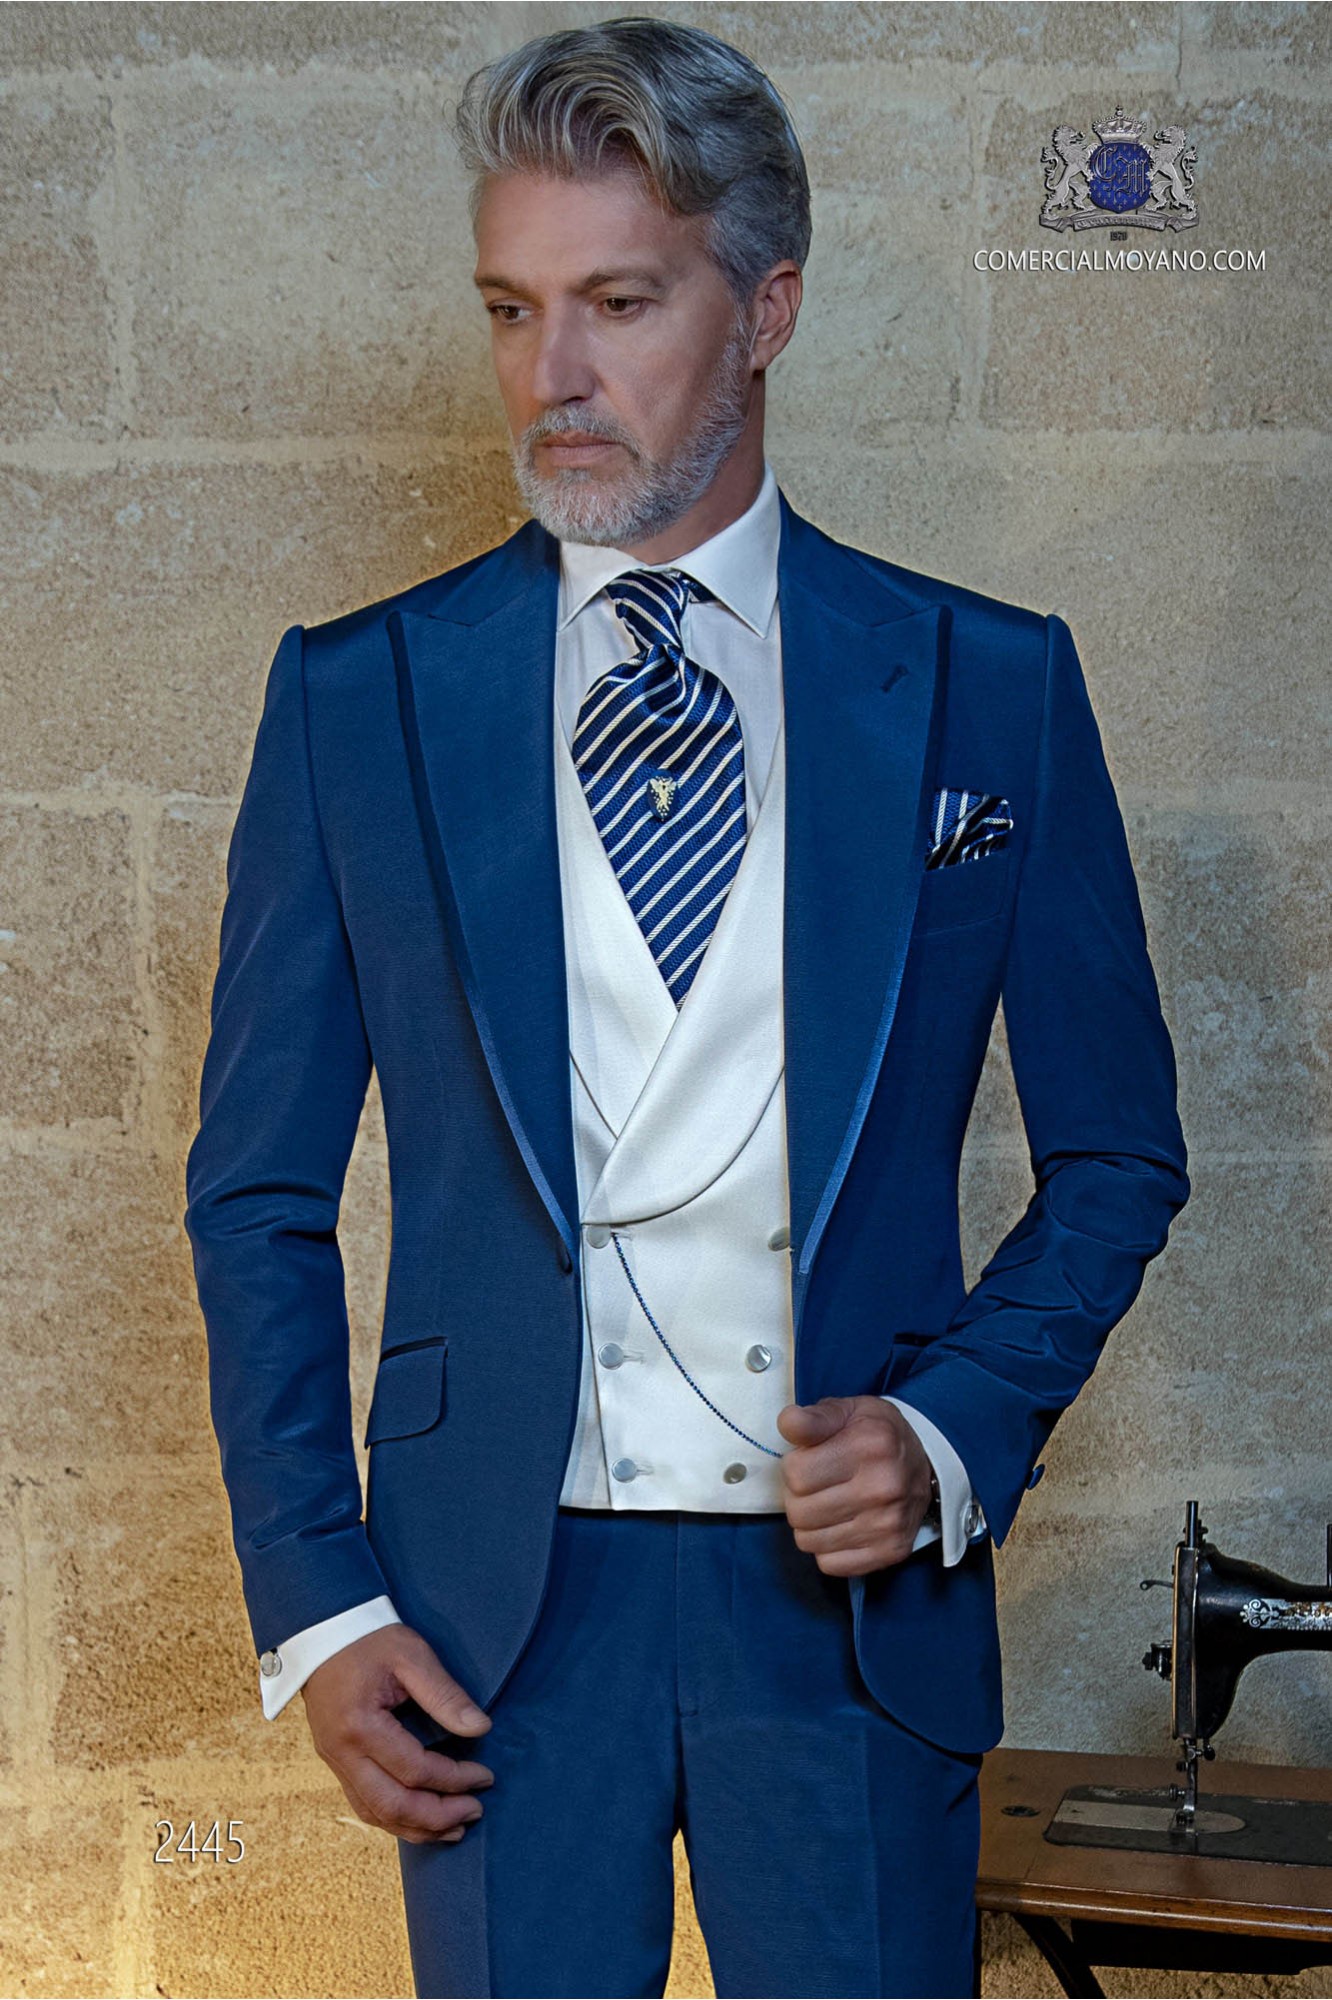 Traje de novio azul eléctrico modelo: 2445 Mario Moyano colección Gentleman